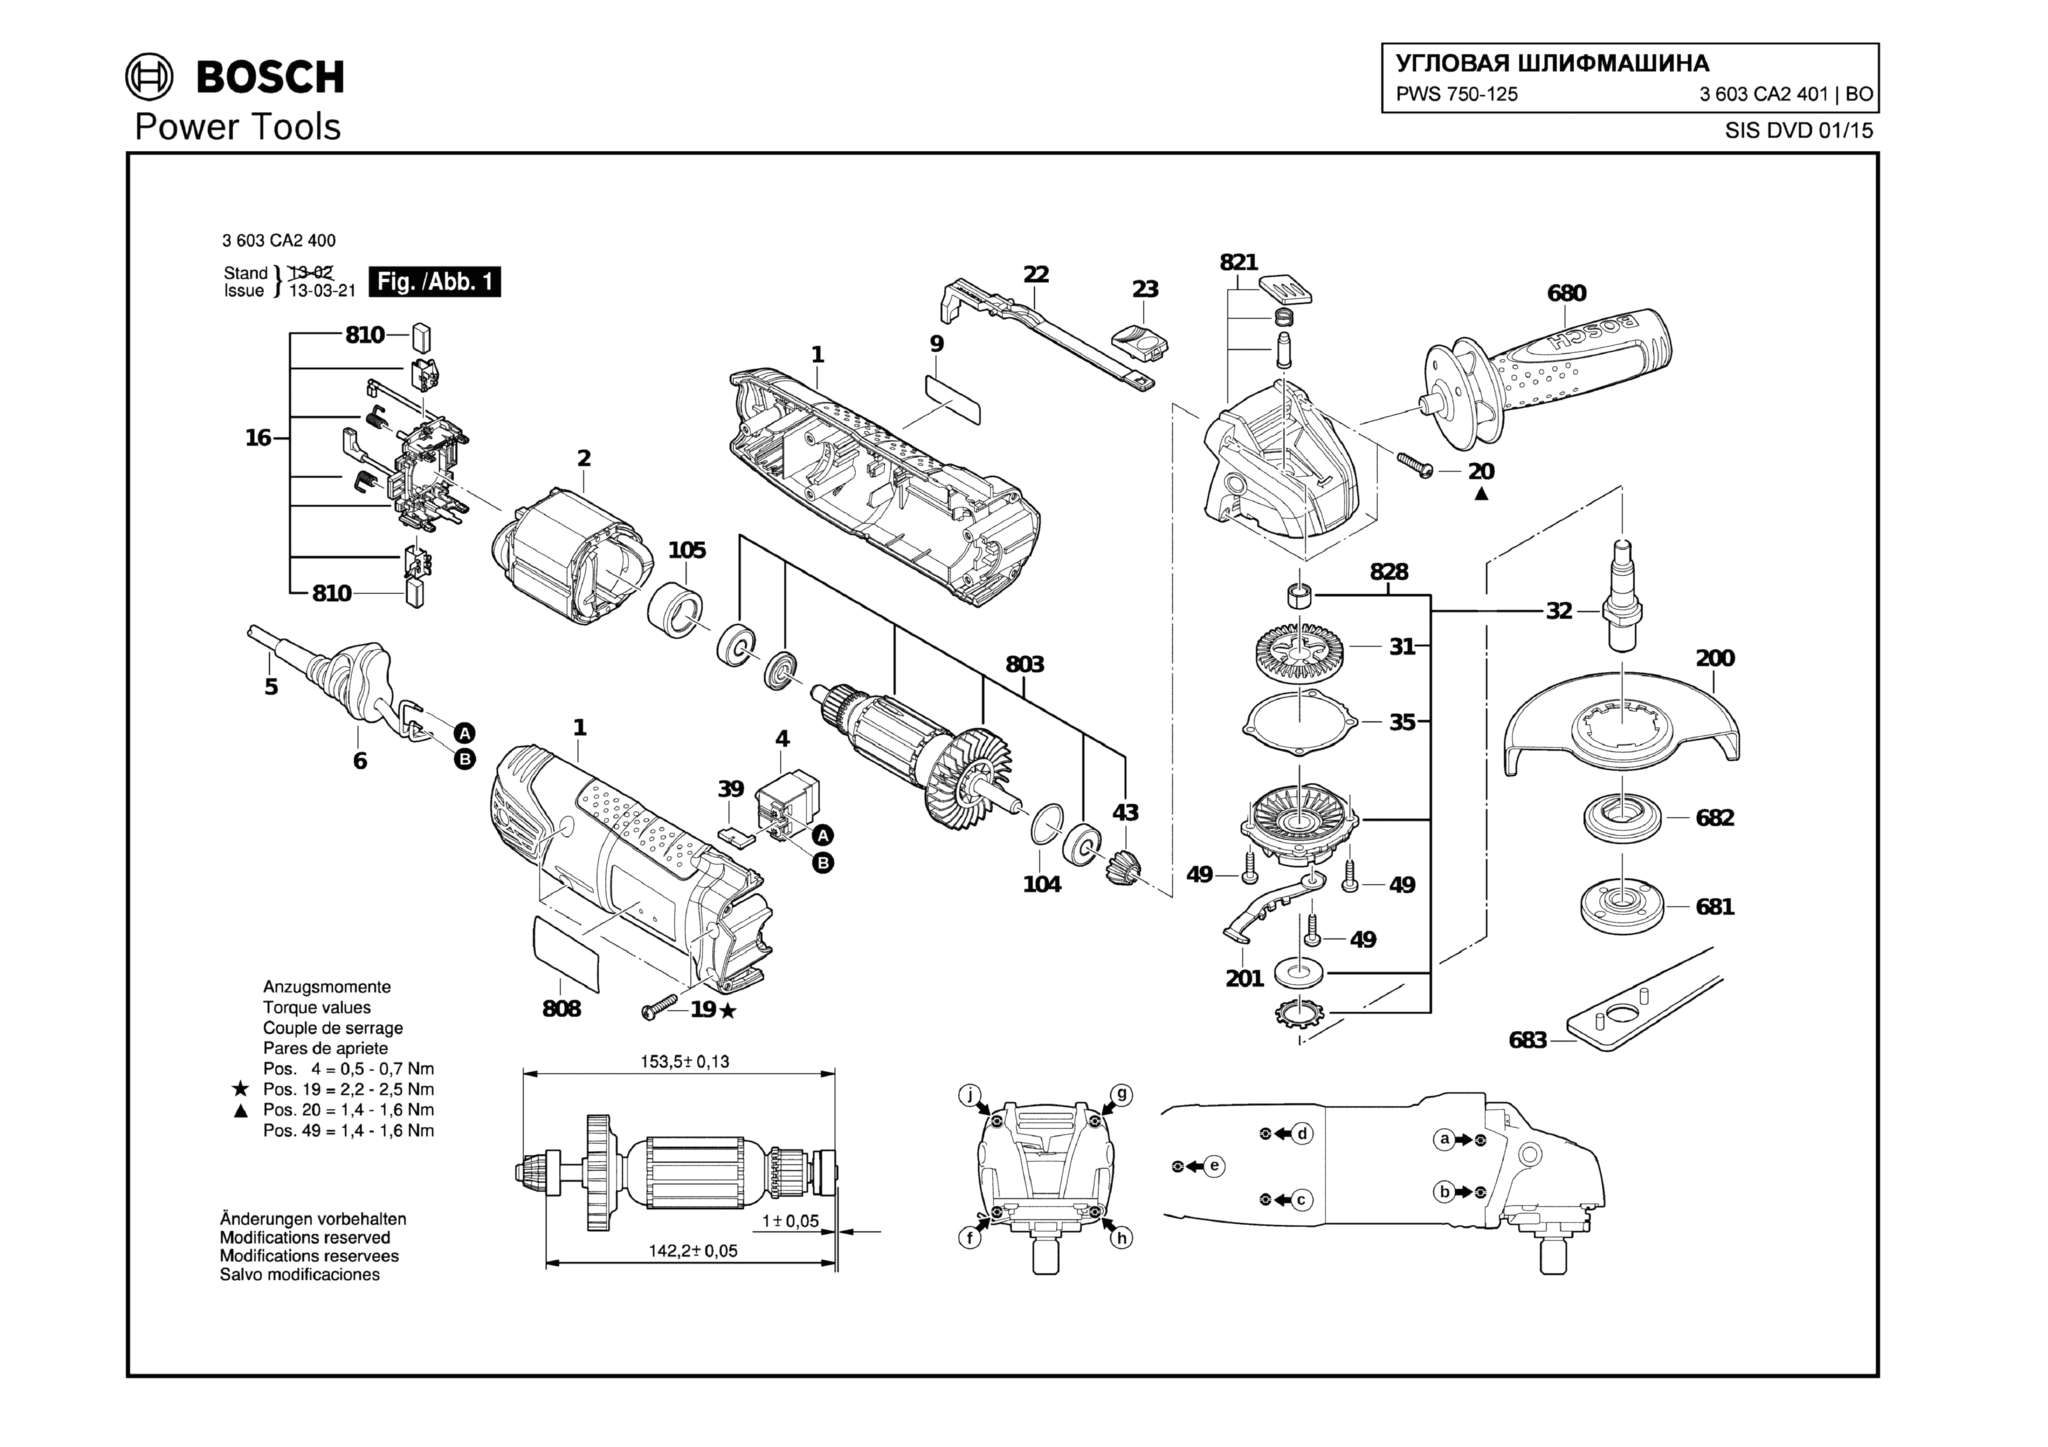 Запчасти, схема и деталировка Bosch PWS 750-125 (ТИП 3603CA2401)